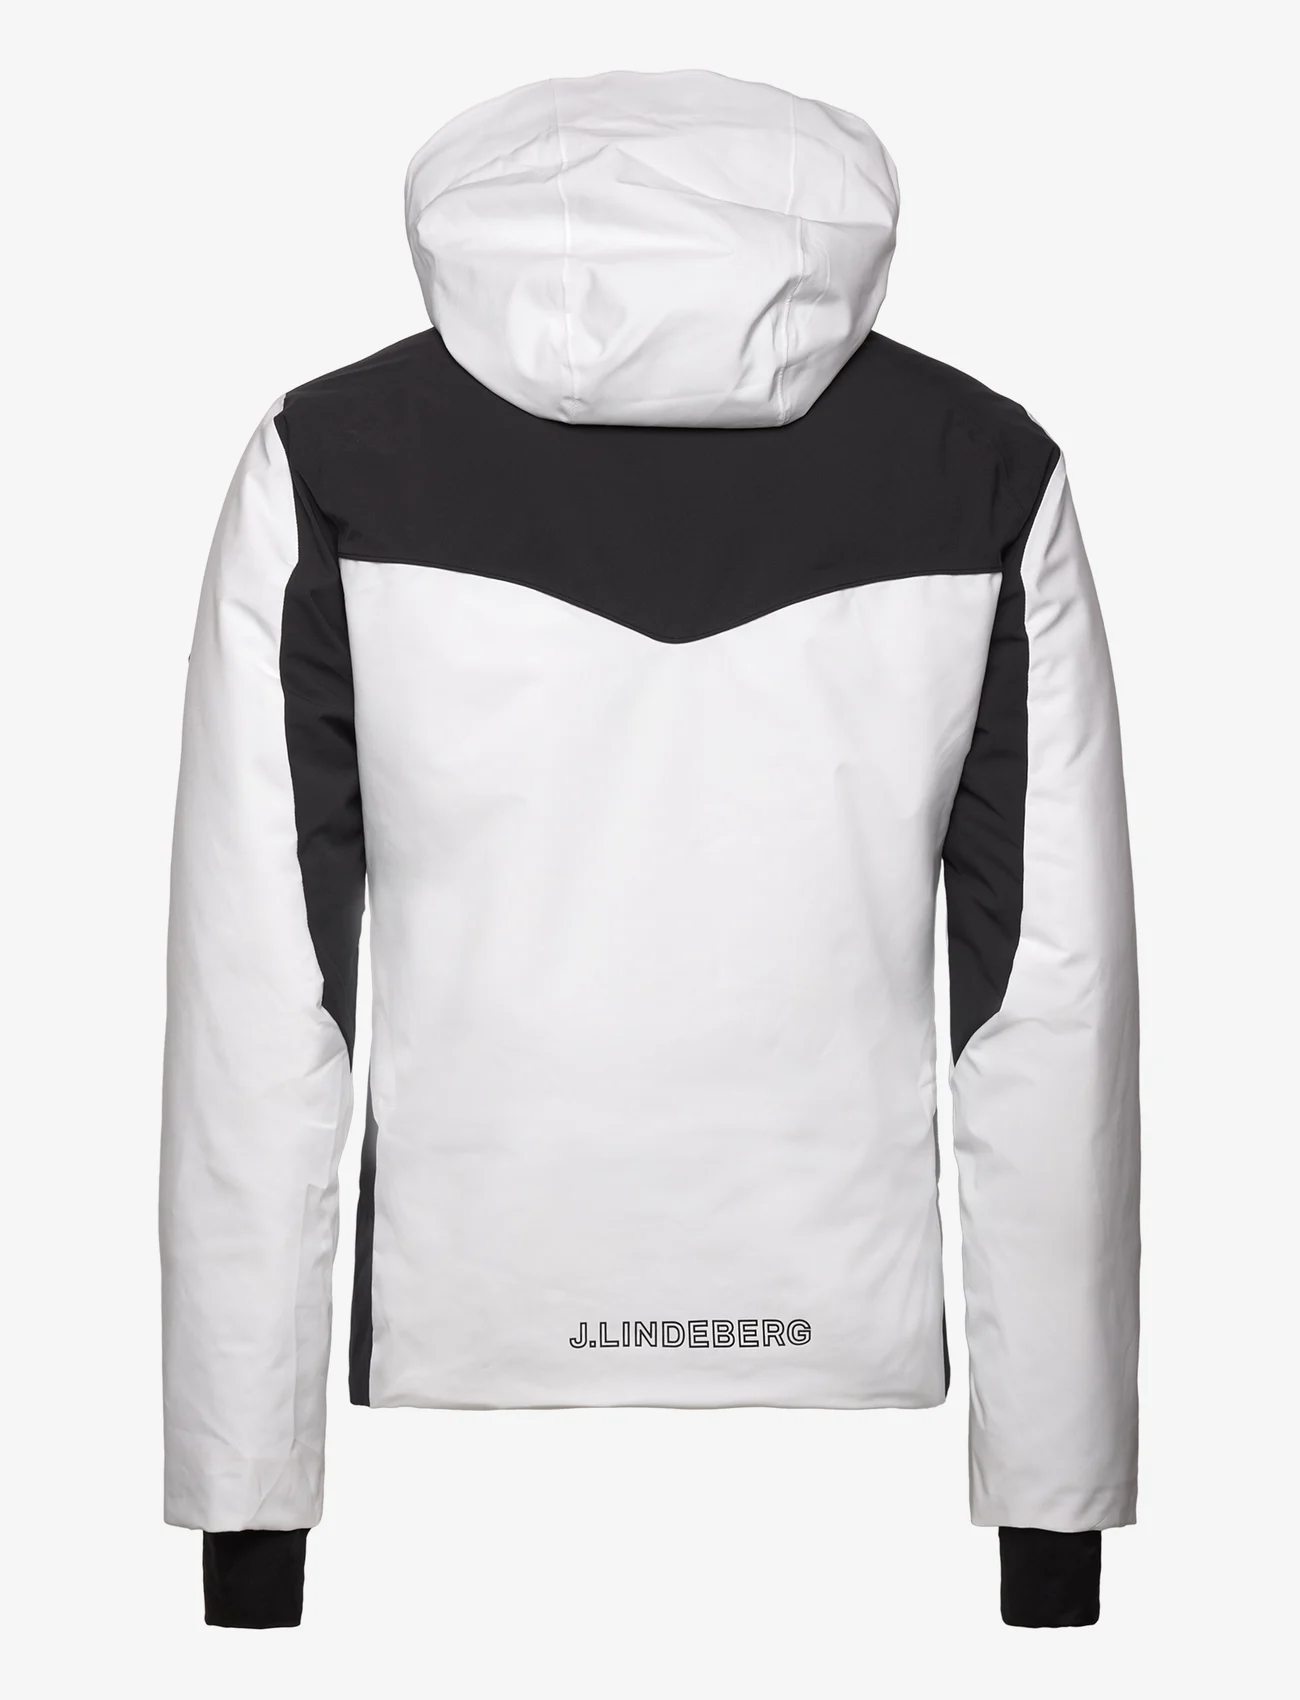 J. Lindeberg - Basalt jacket - skijacken - black - 1